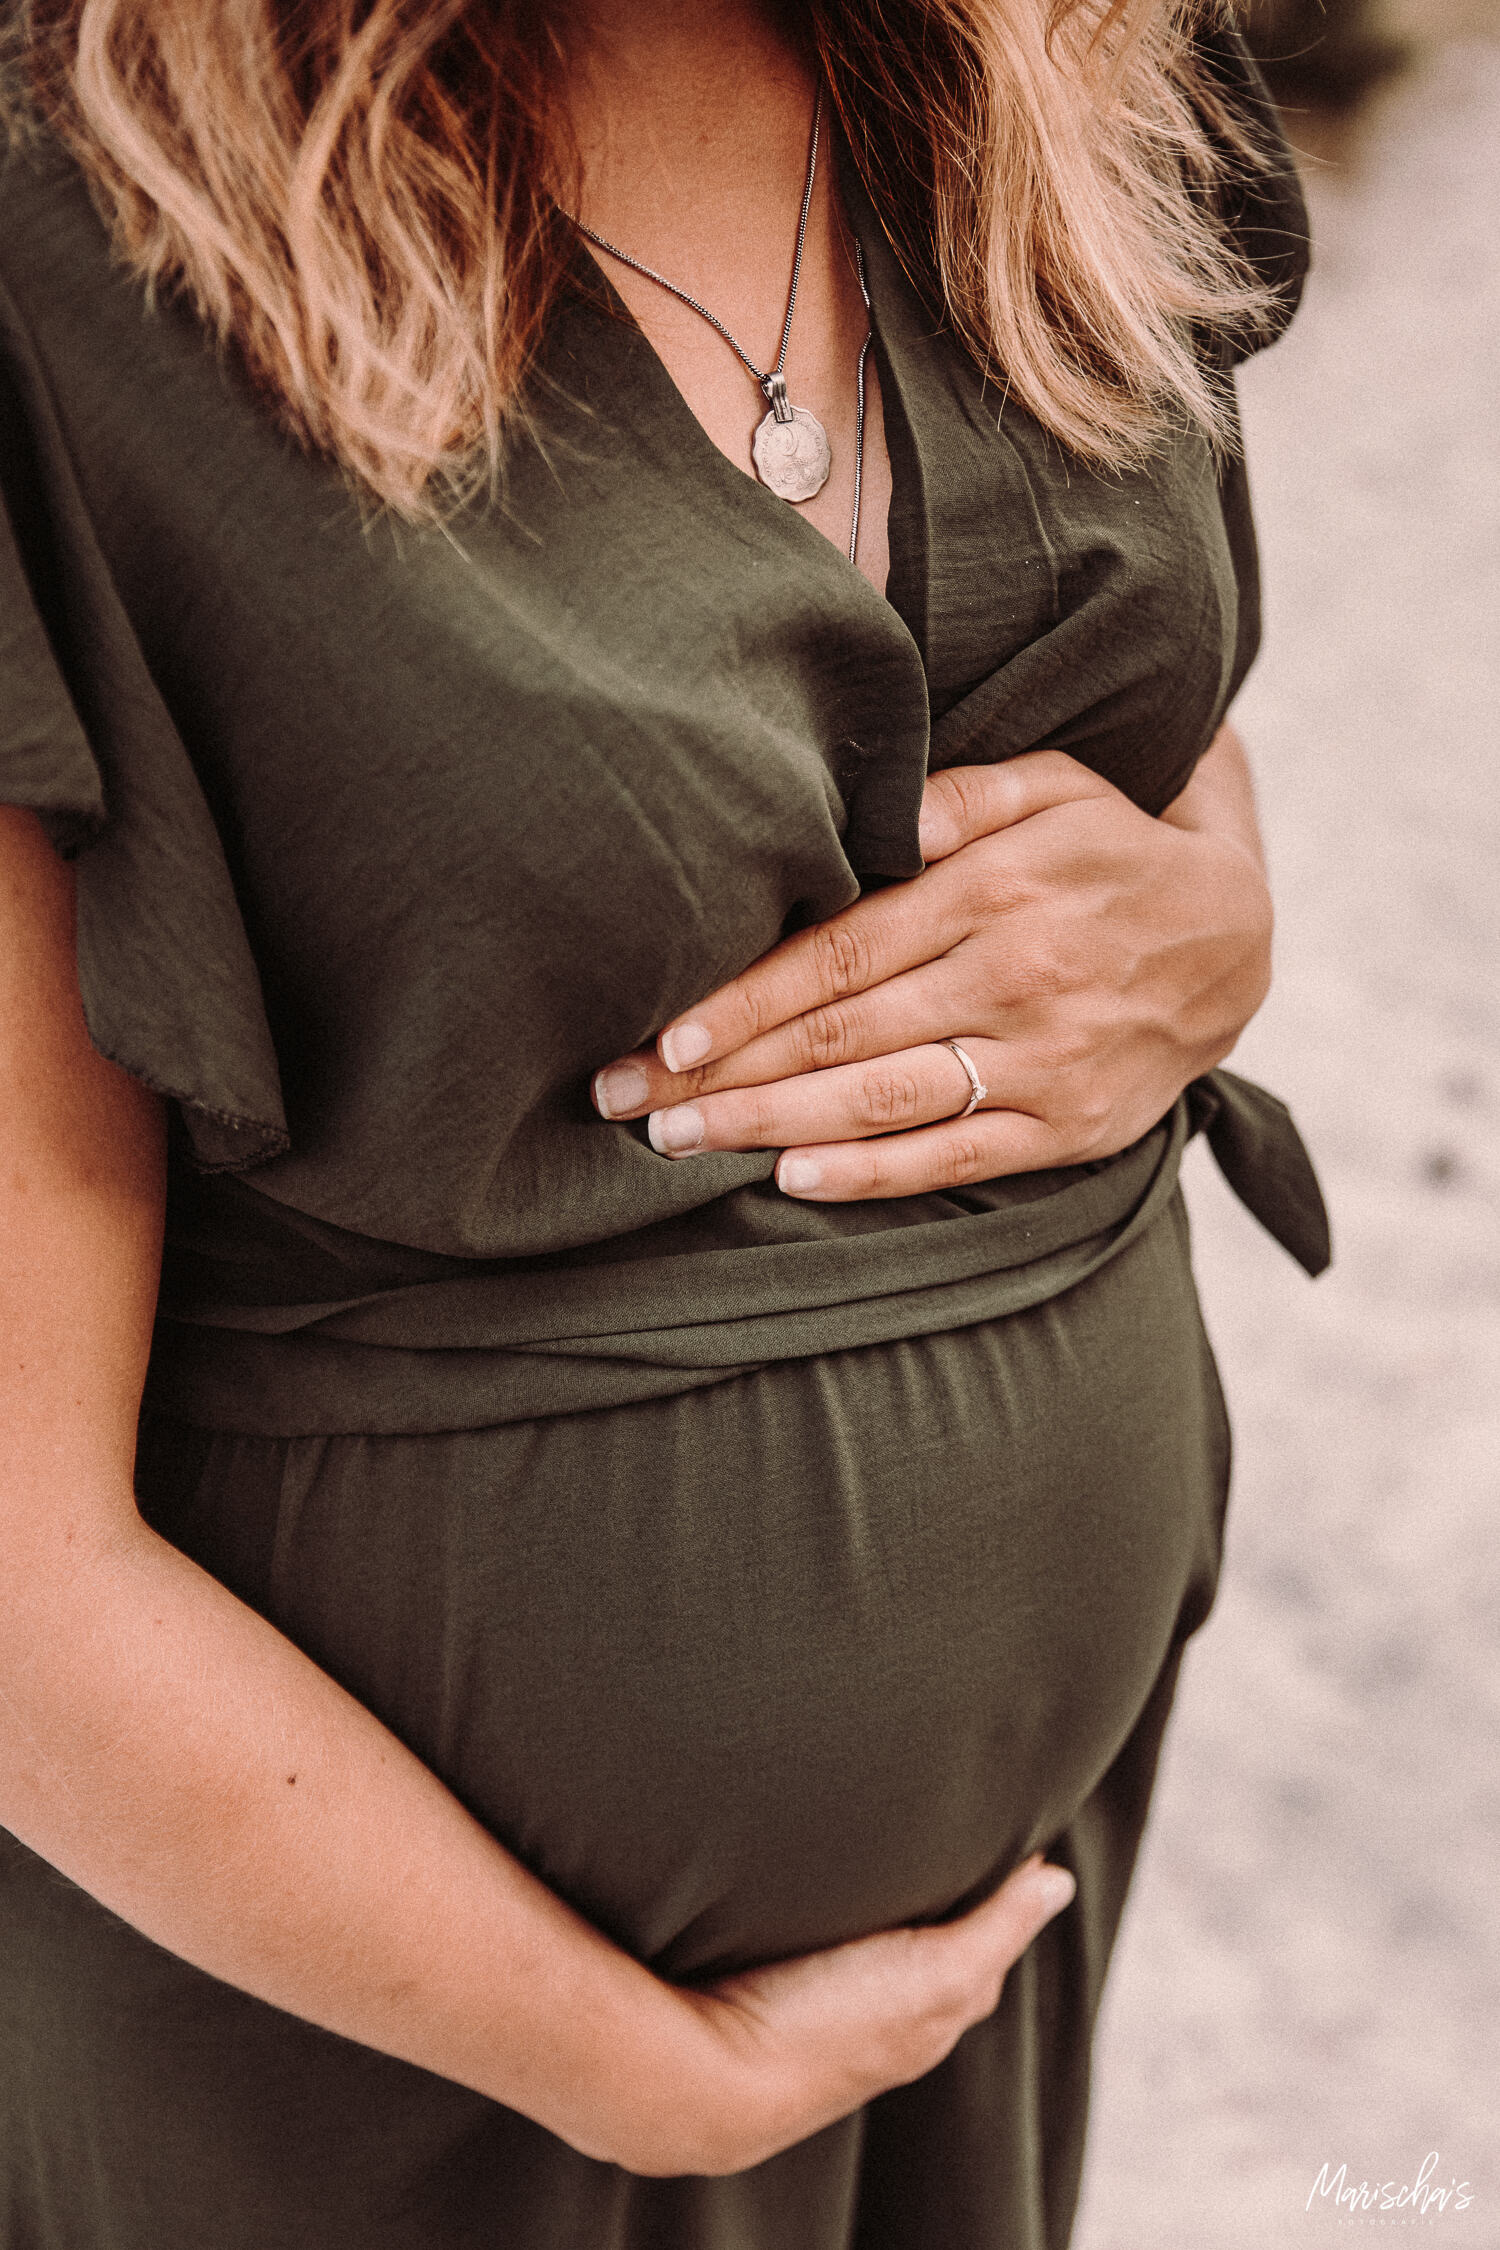 zwangerschapsfoto's op een buiten locatie in limburg